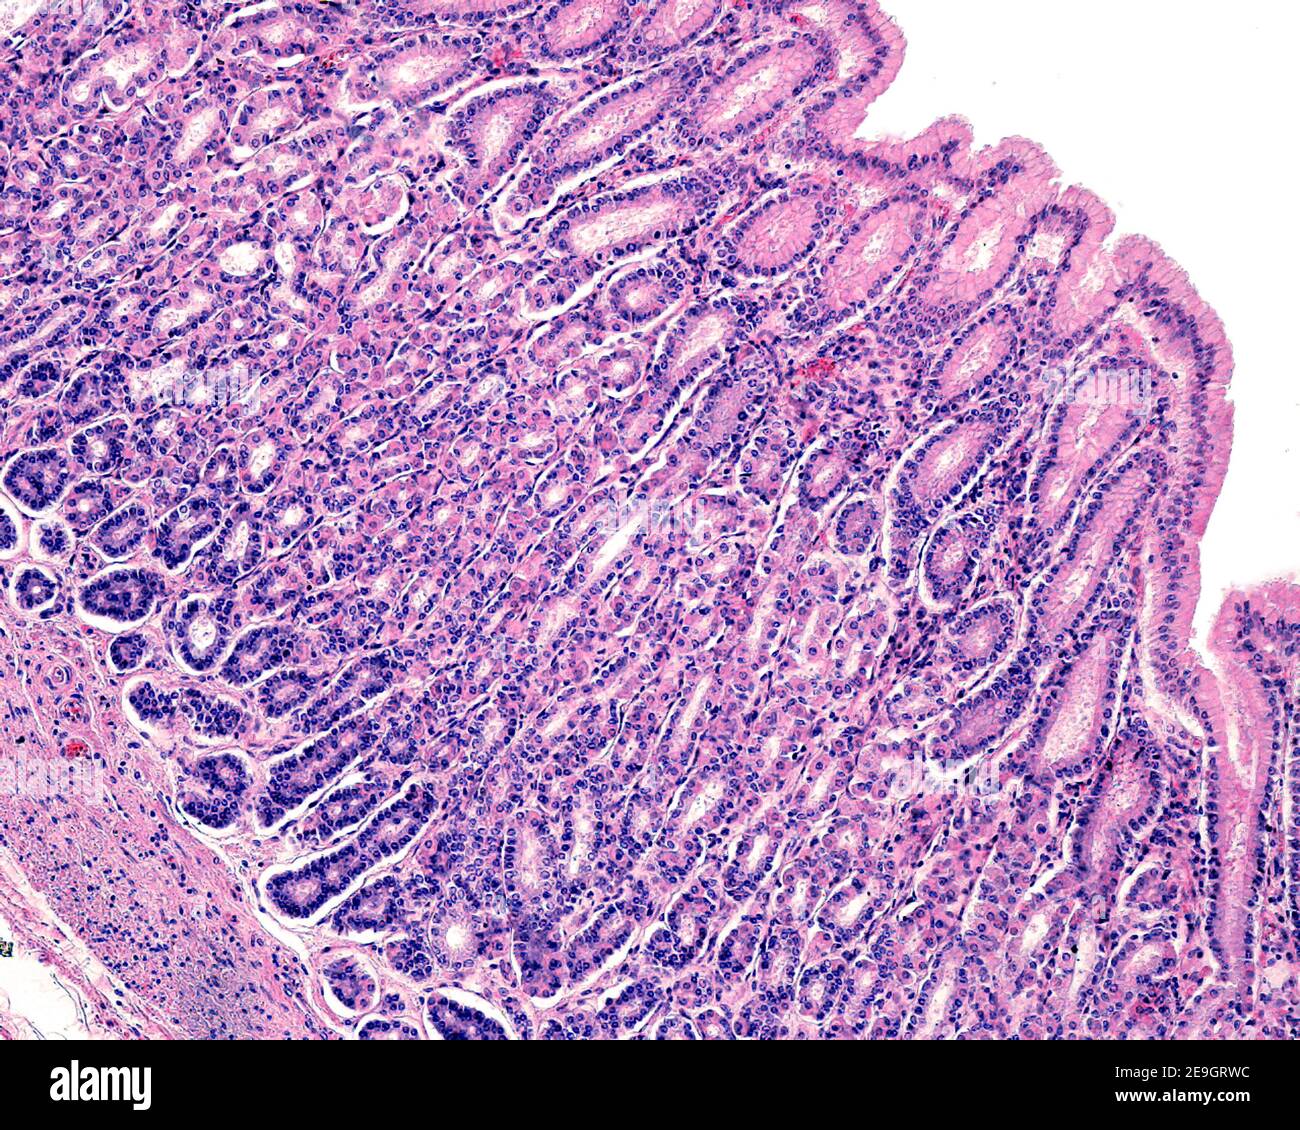 Mucosa de un estómago humano que muestra: Epitelio superficial, fosas gástricas. Las glándulas fundícas se abren en las fosas y tienen células parietales y principales Foto de stock